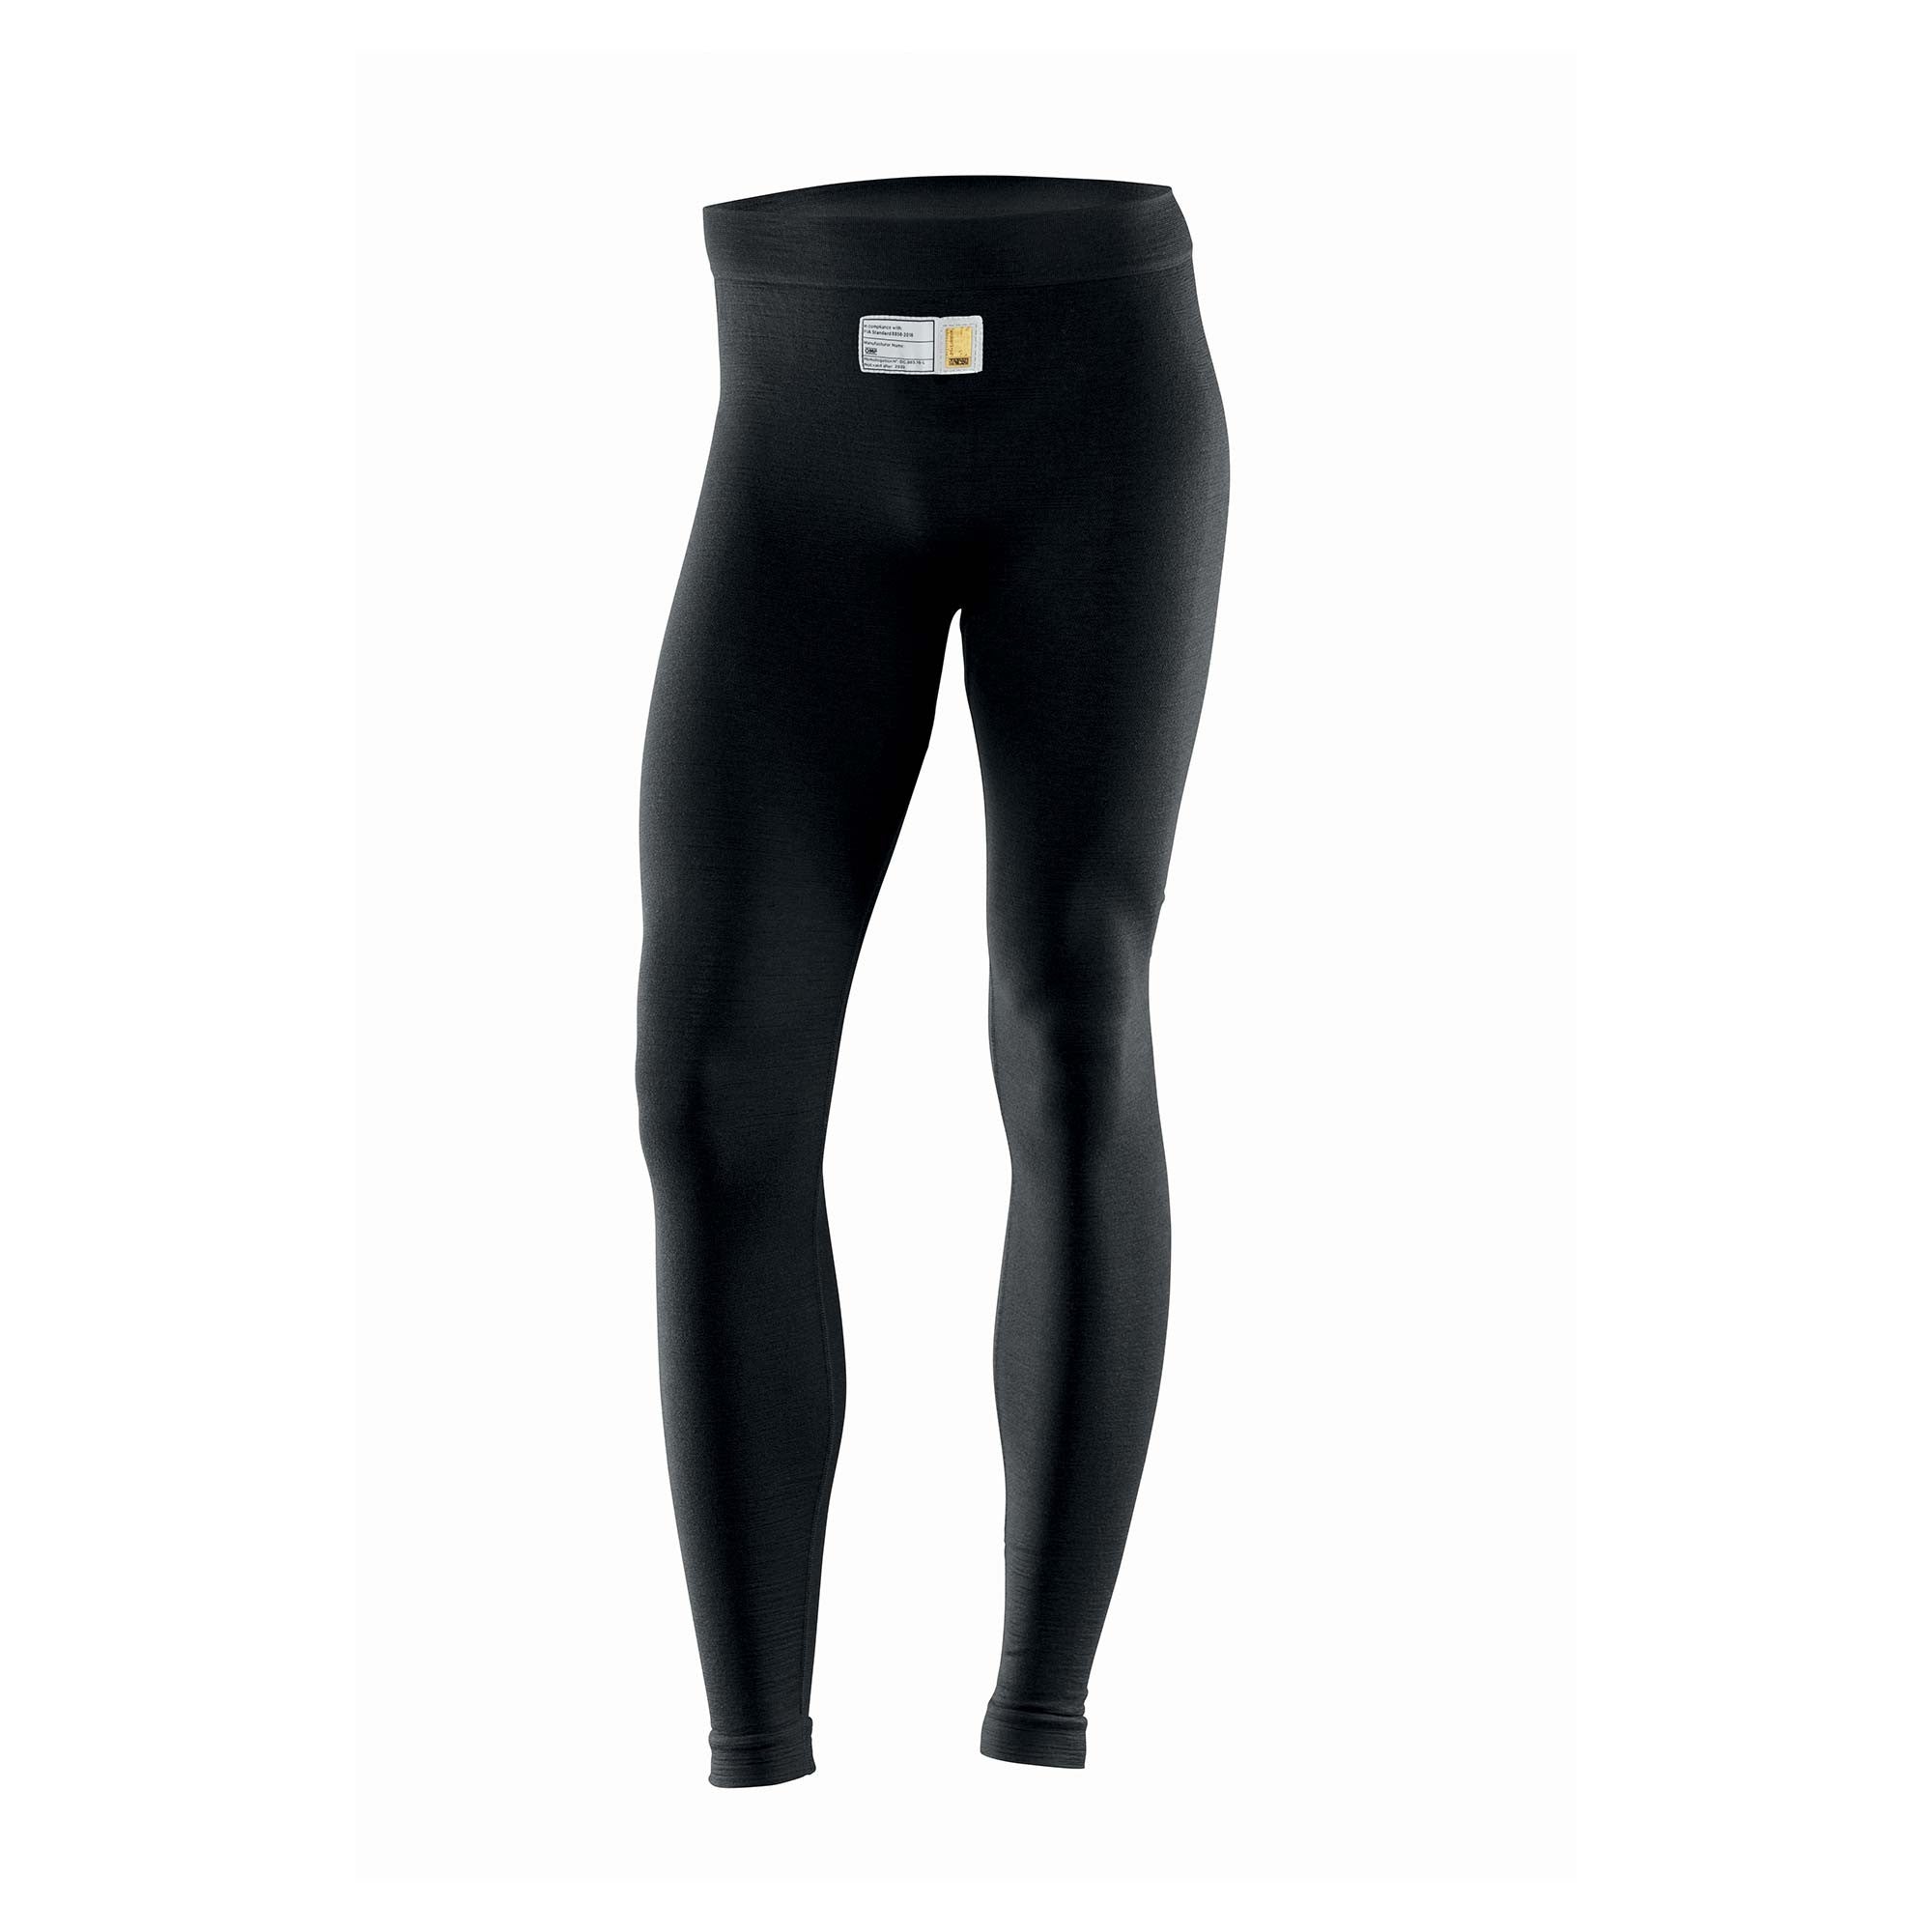 OMP IE0-0796-A01-071-XXL TECNICA EVO Pants underwear, FIA 8856-2018, black, size XXL Photo-0 